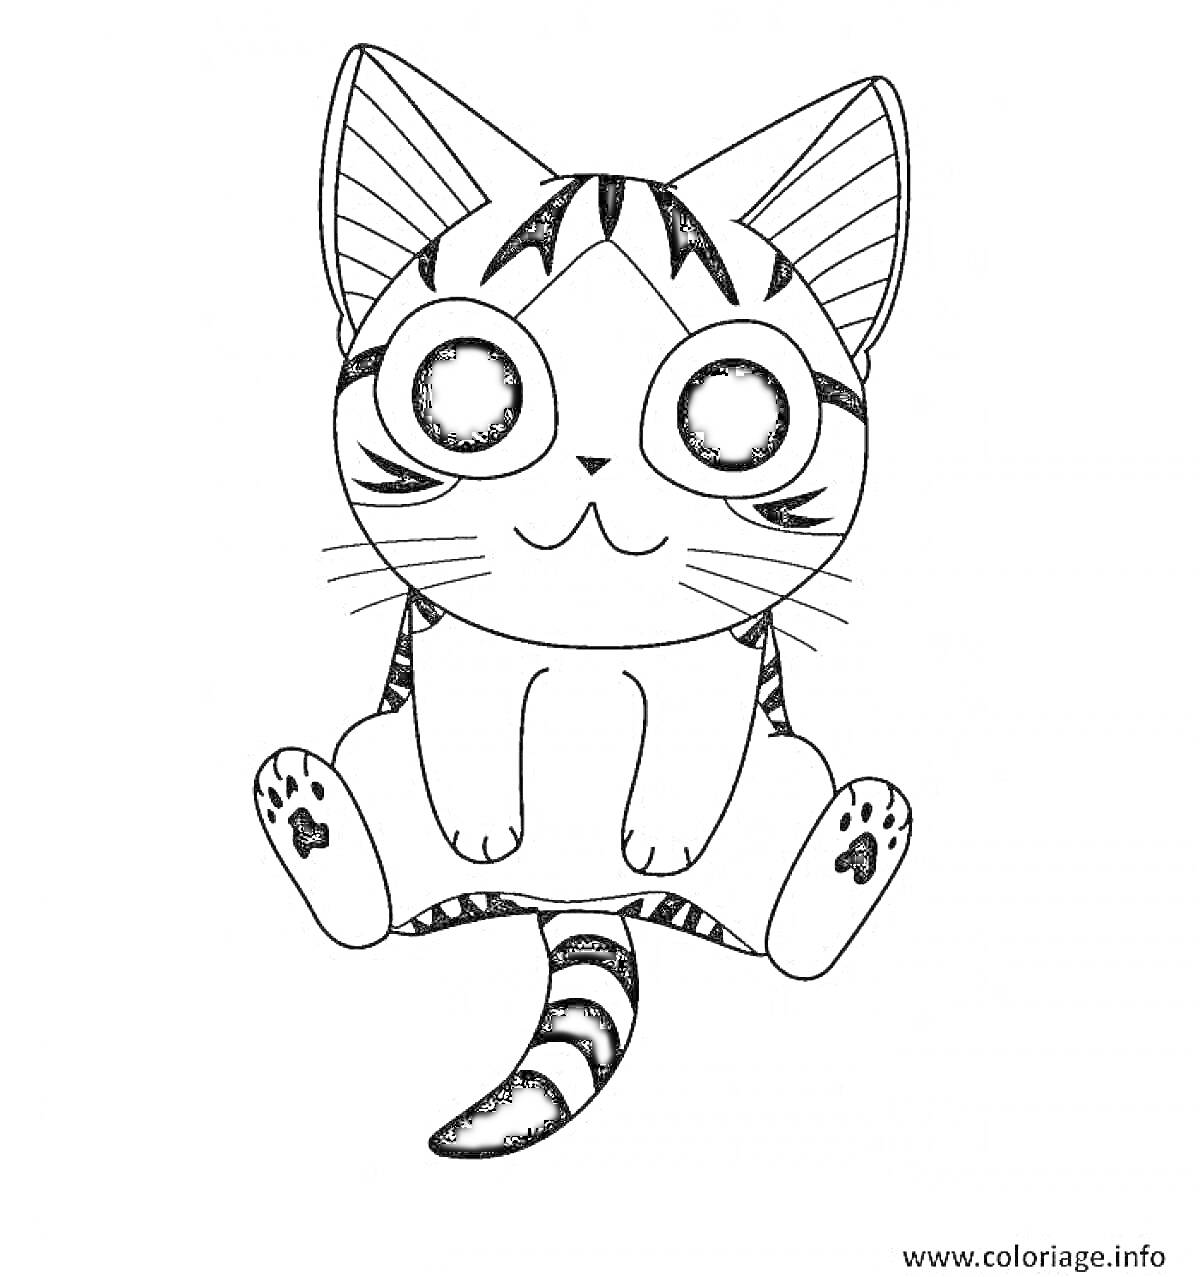 Раскраска Кот с большими глазами, сидящий с поднятыми лапами